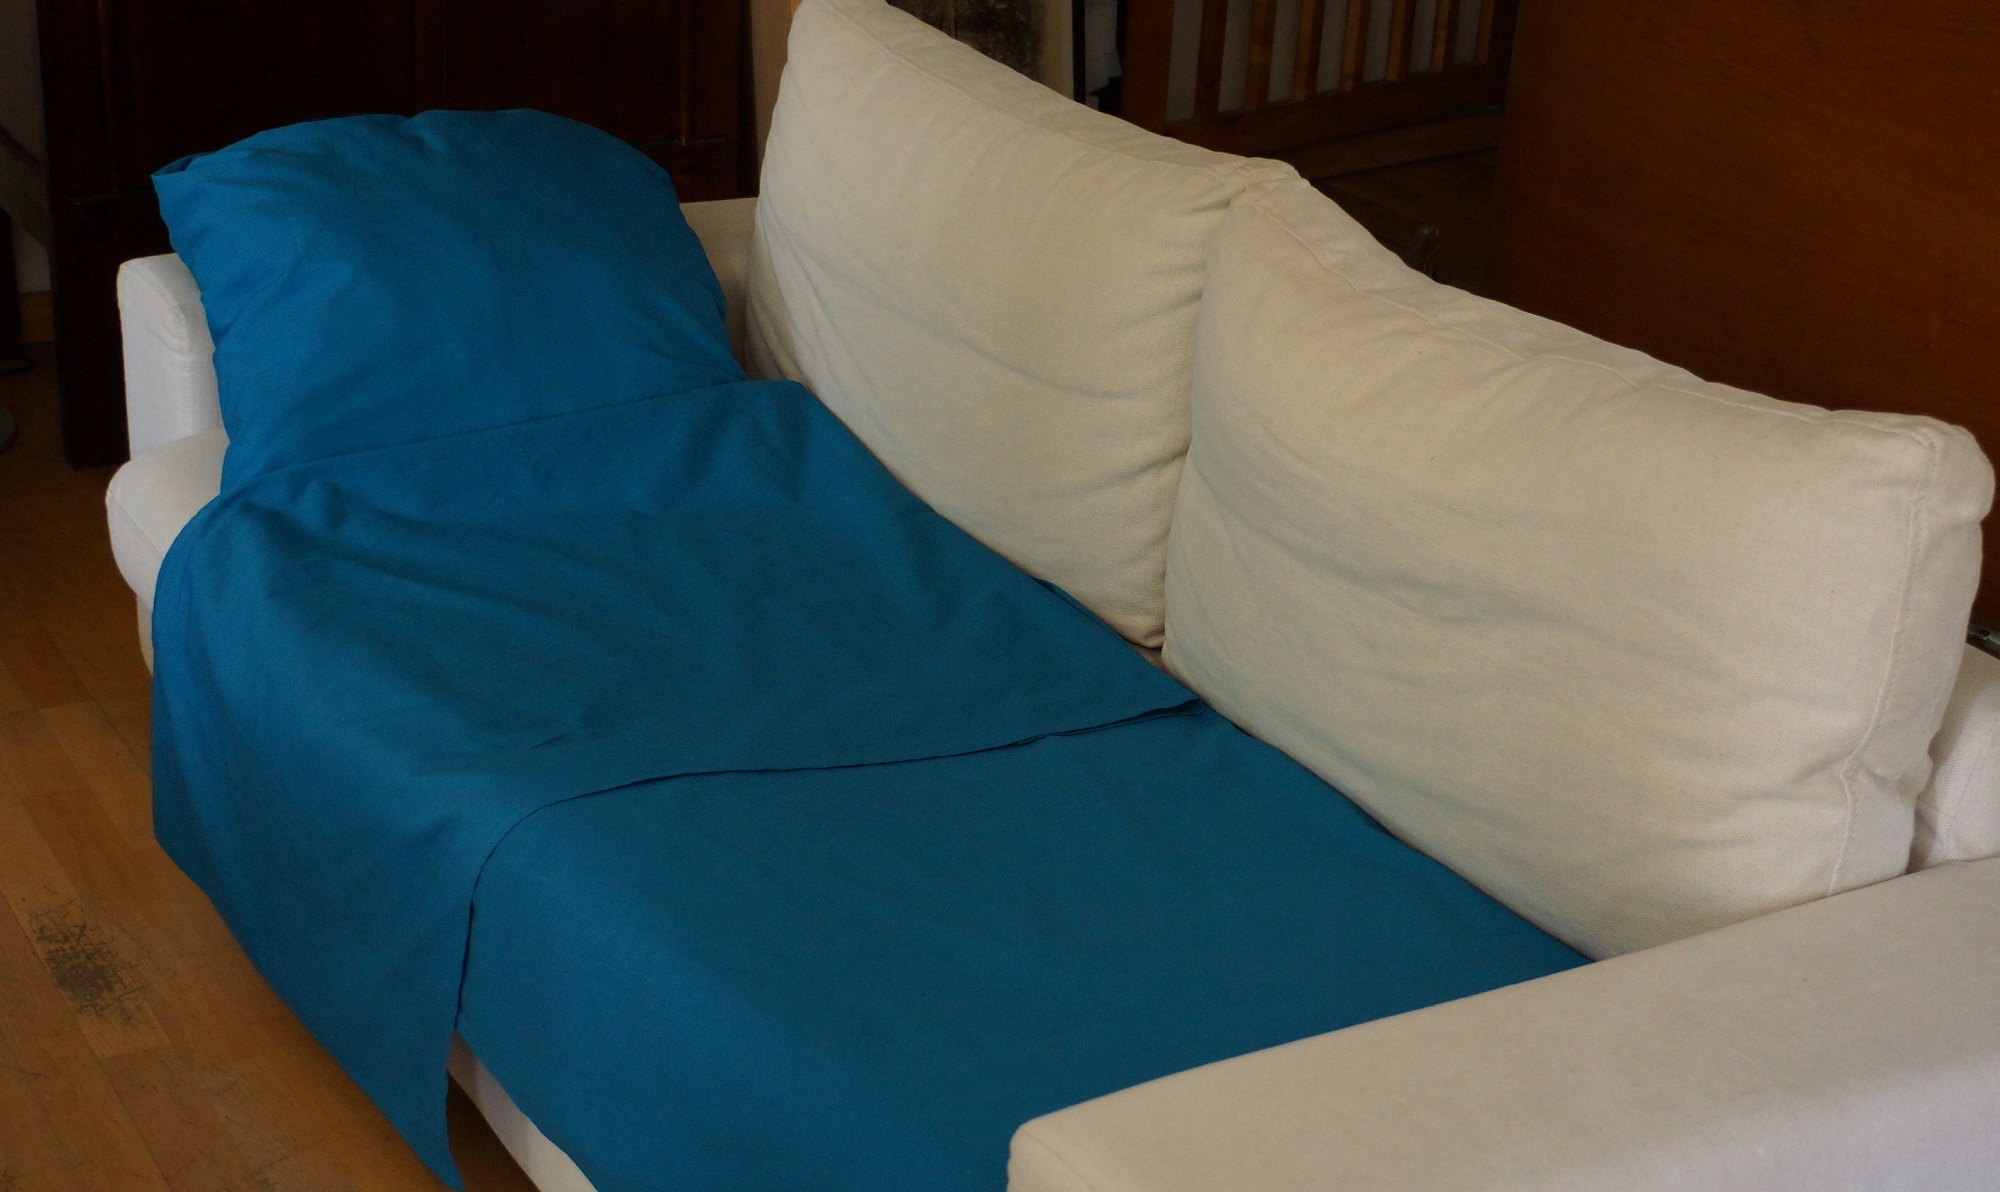 nightbag 1 personne Pacific en place sur canapé